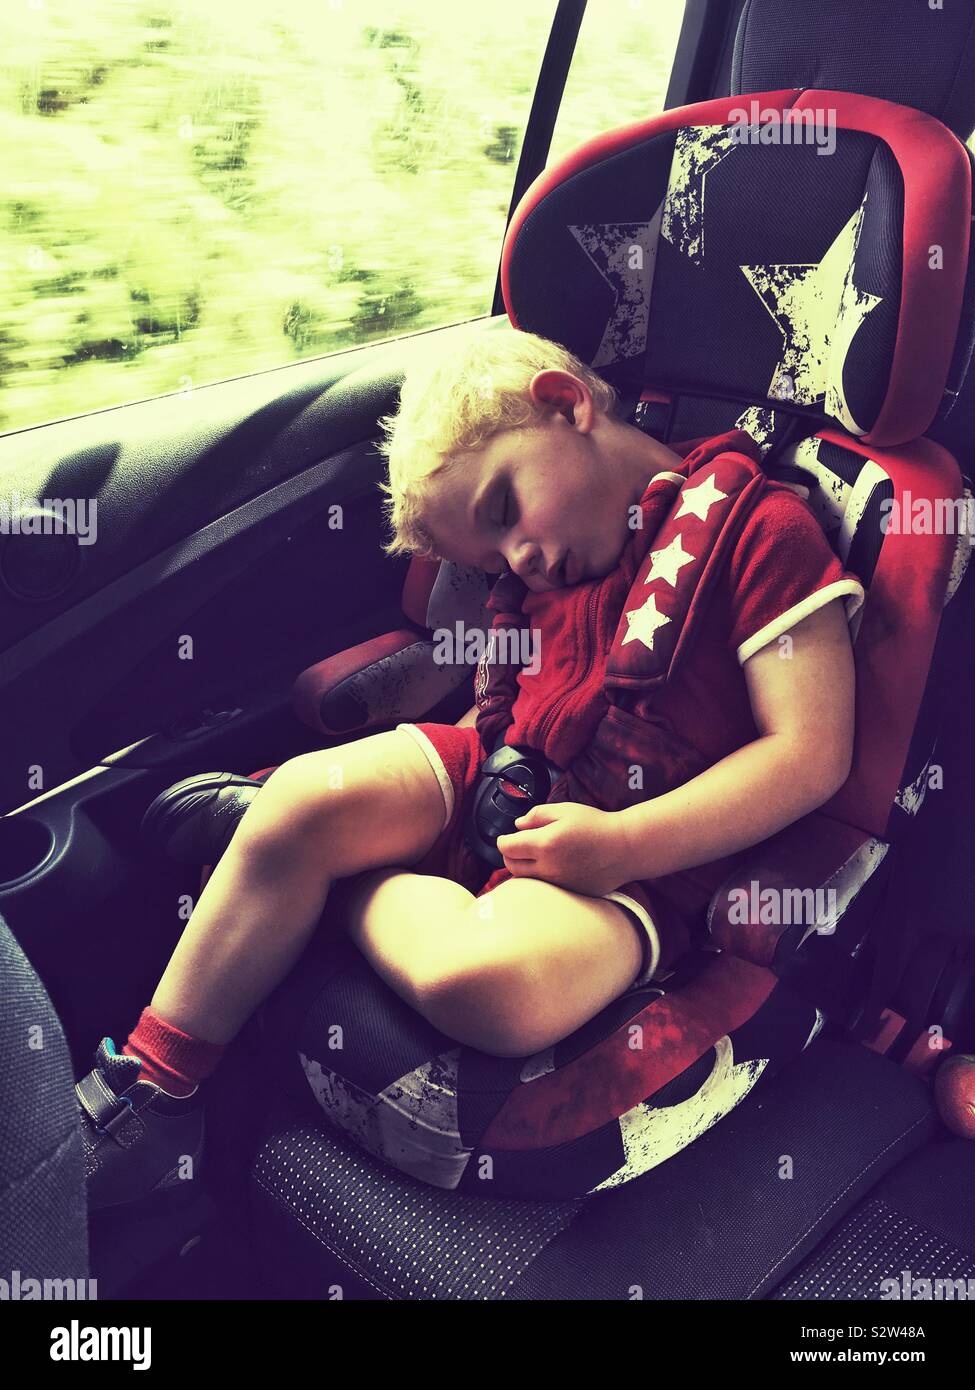 Zwei kleine Kinder schlafen im Auto Stockfotografie - Alamy